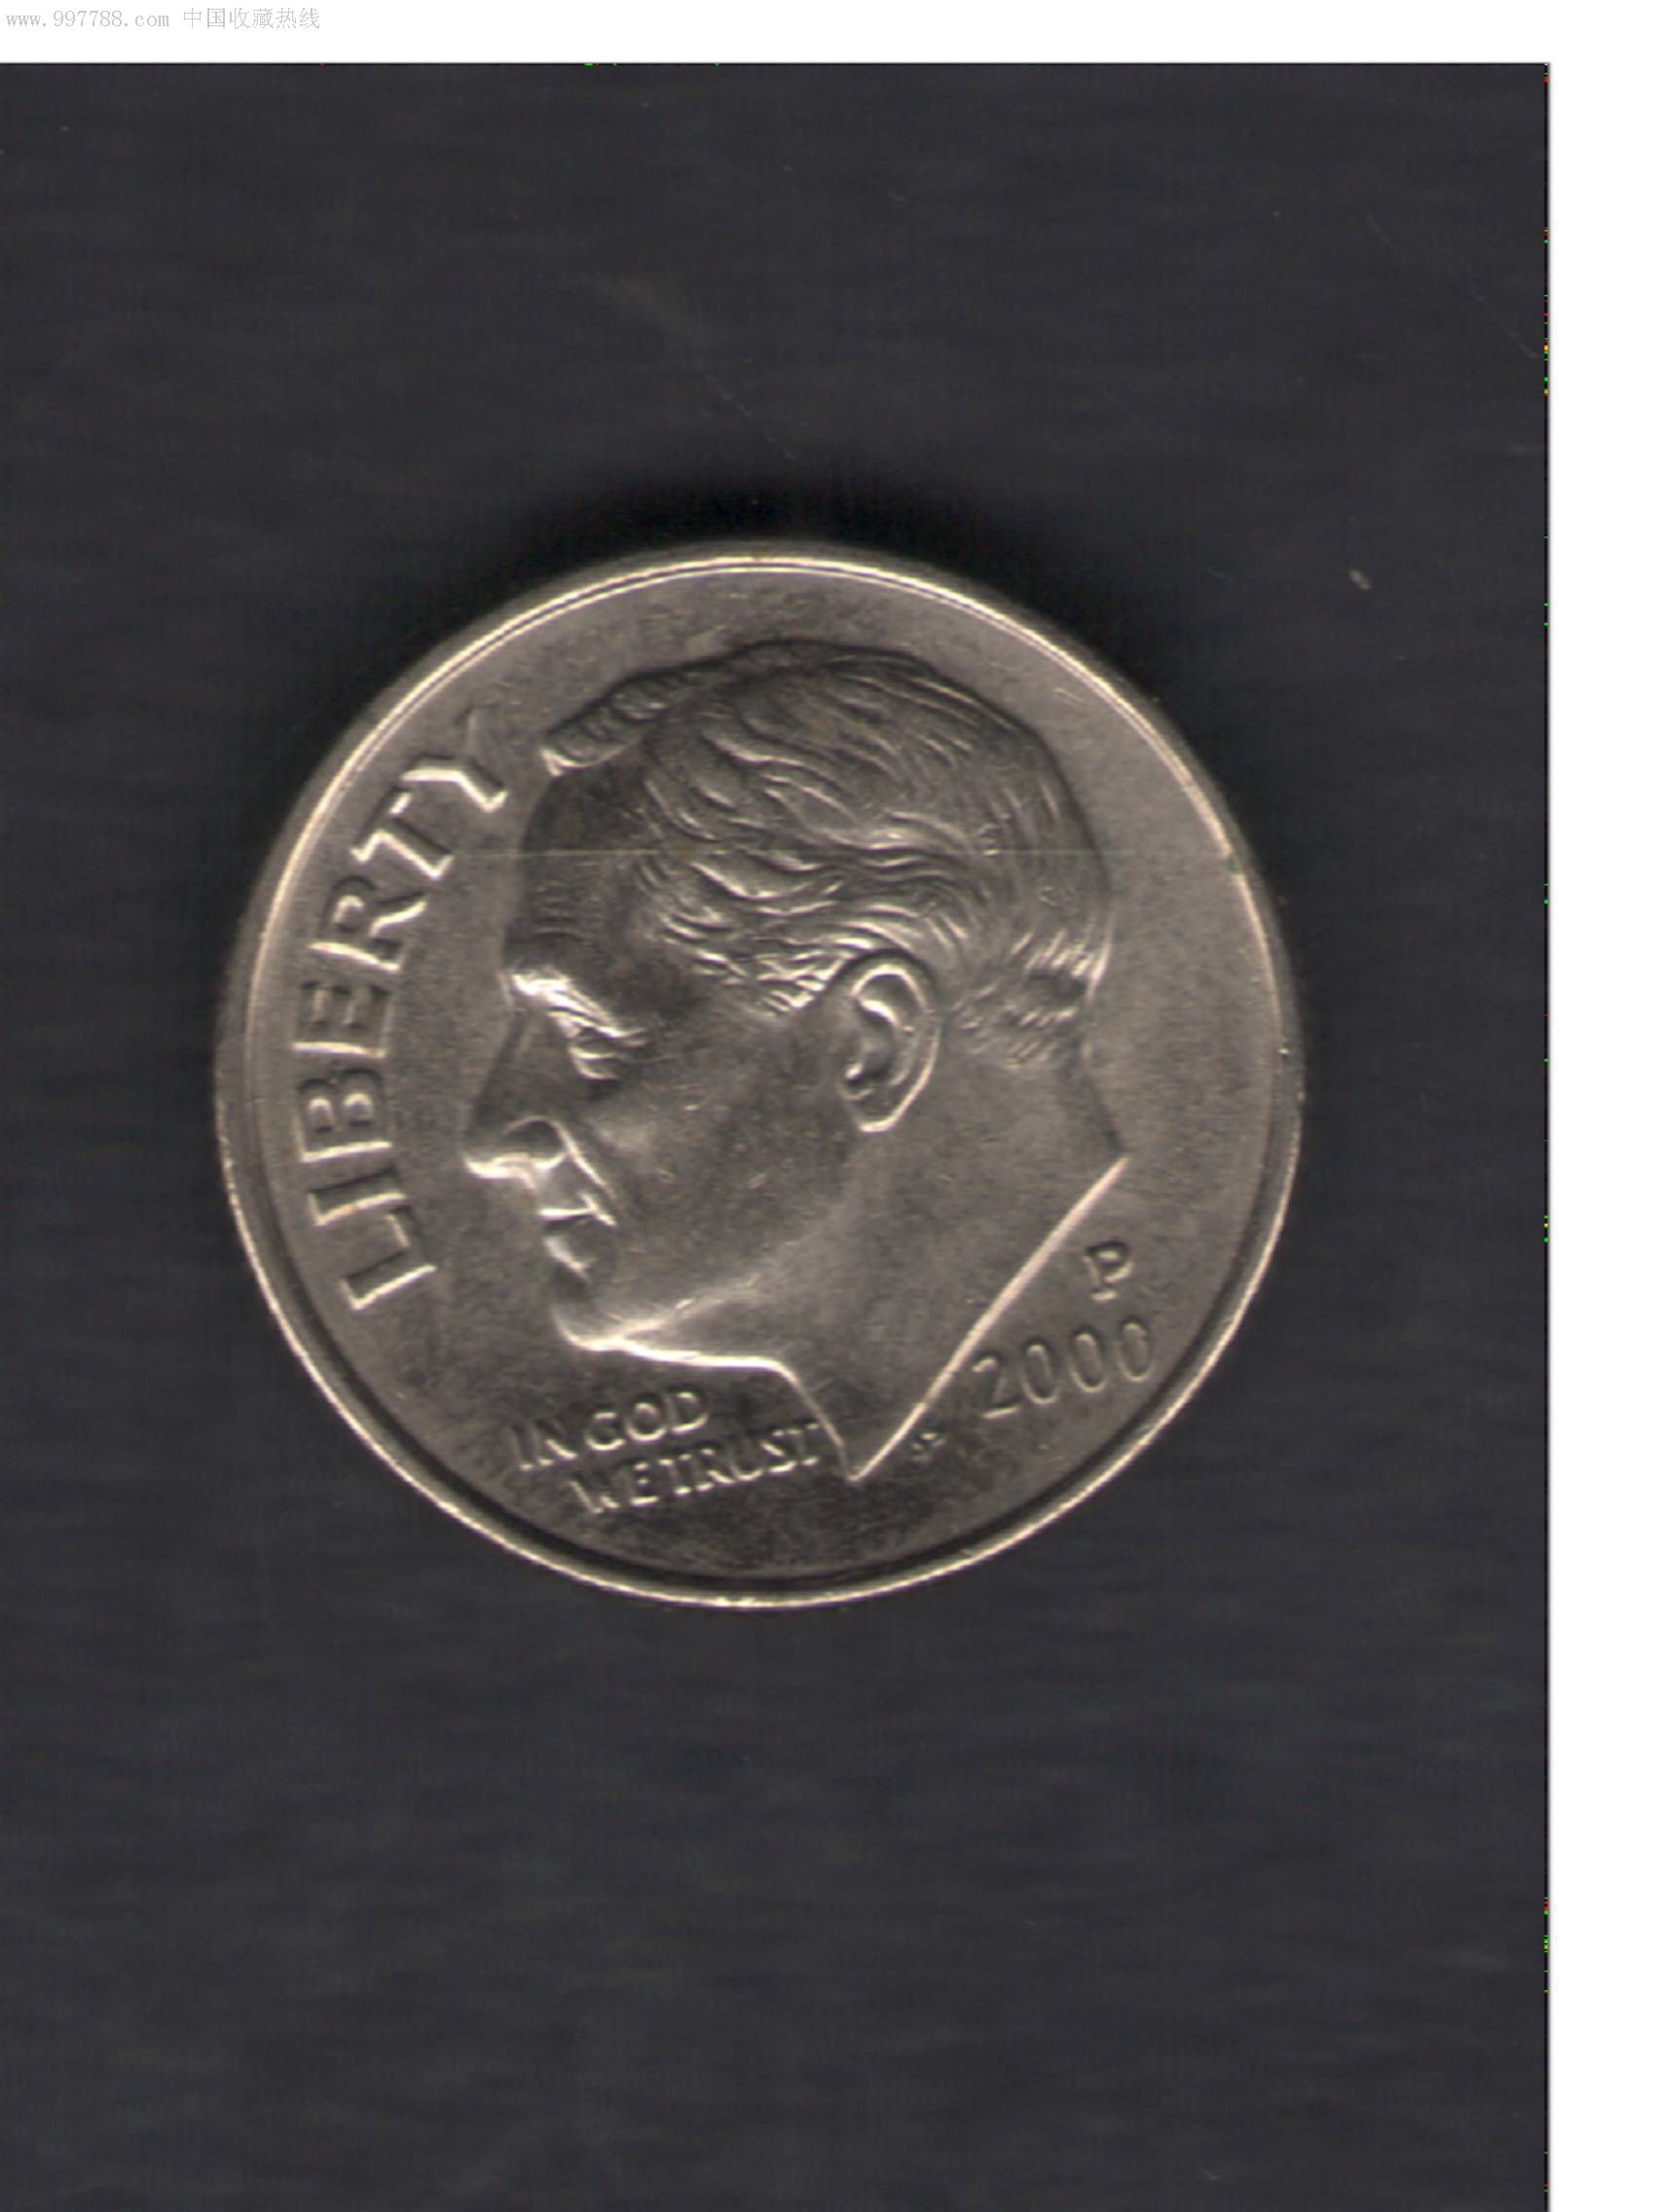 2000年10美分流通硬币